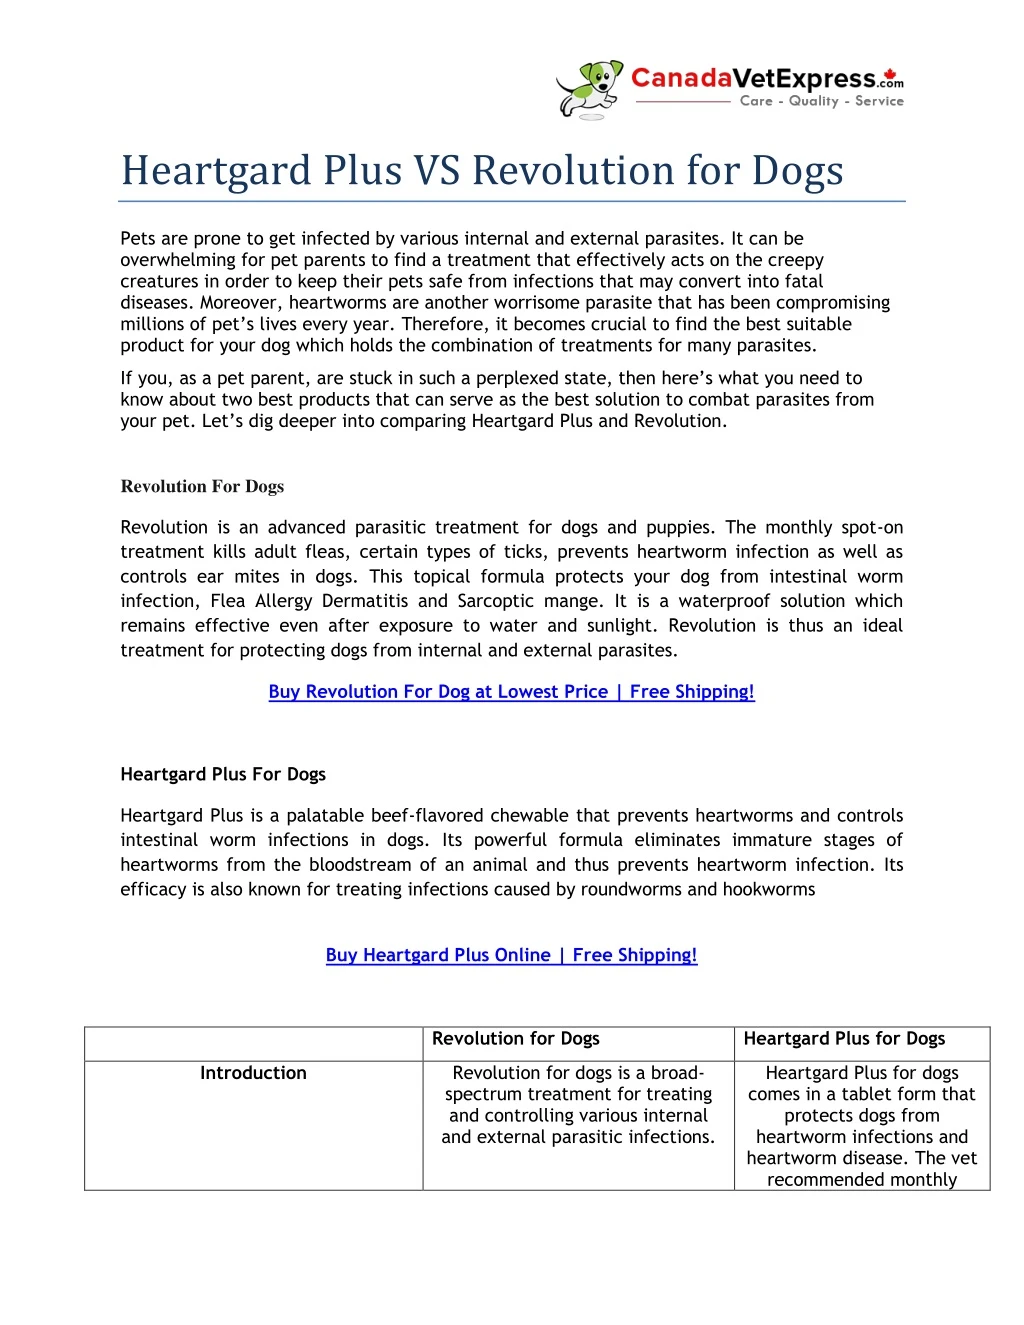 heartgard plus vs revolution for dogs